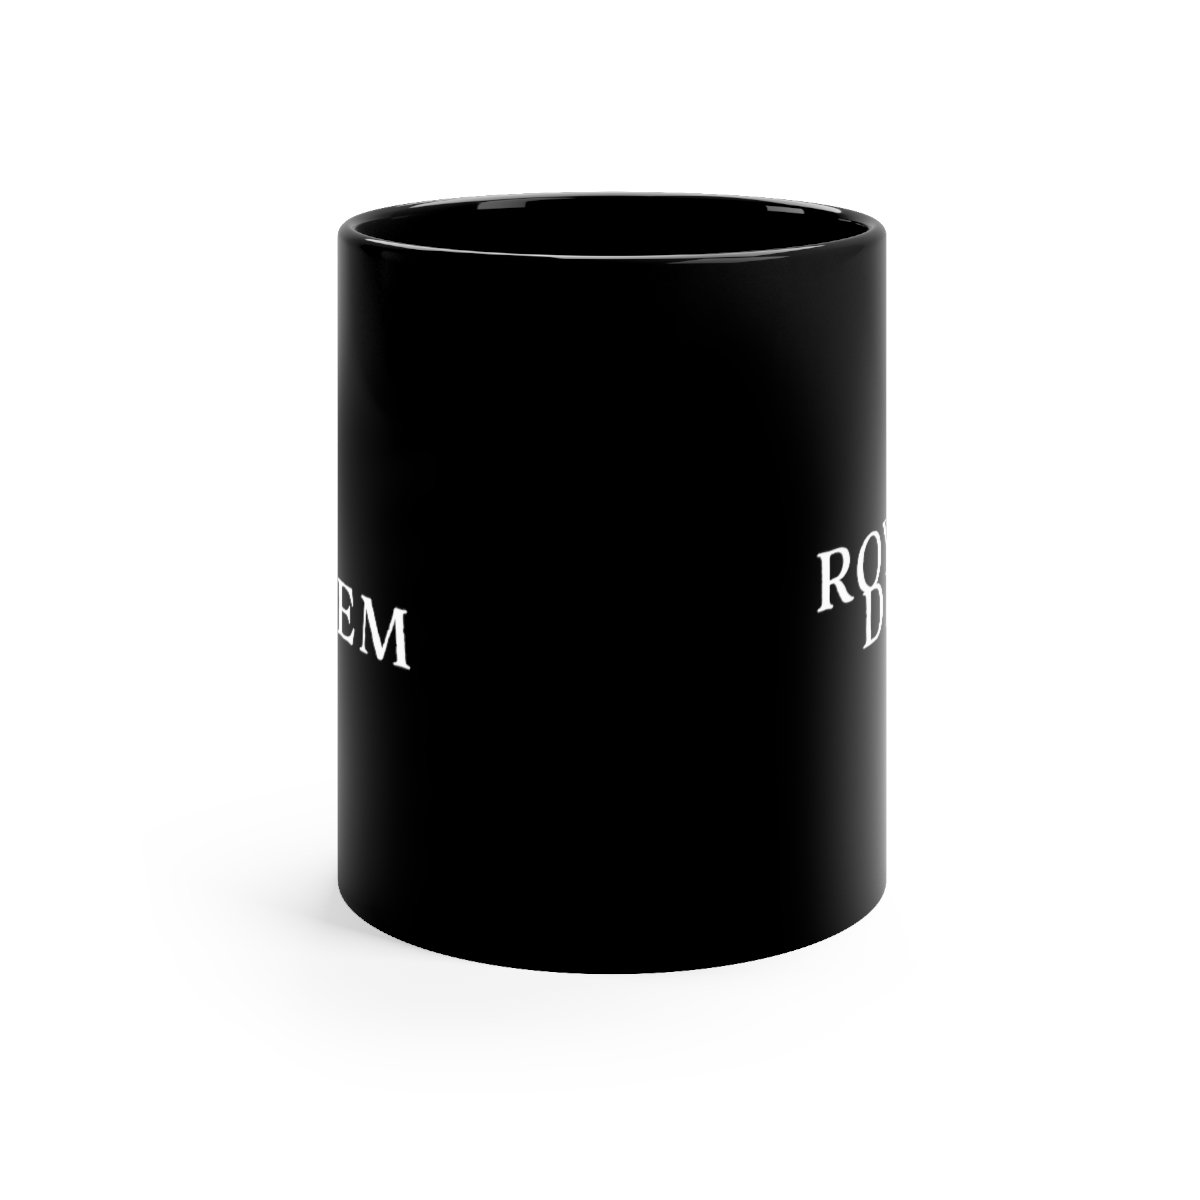 Royal Diadem Logo V2 11oz Black mug